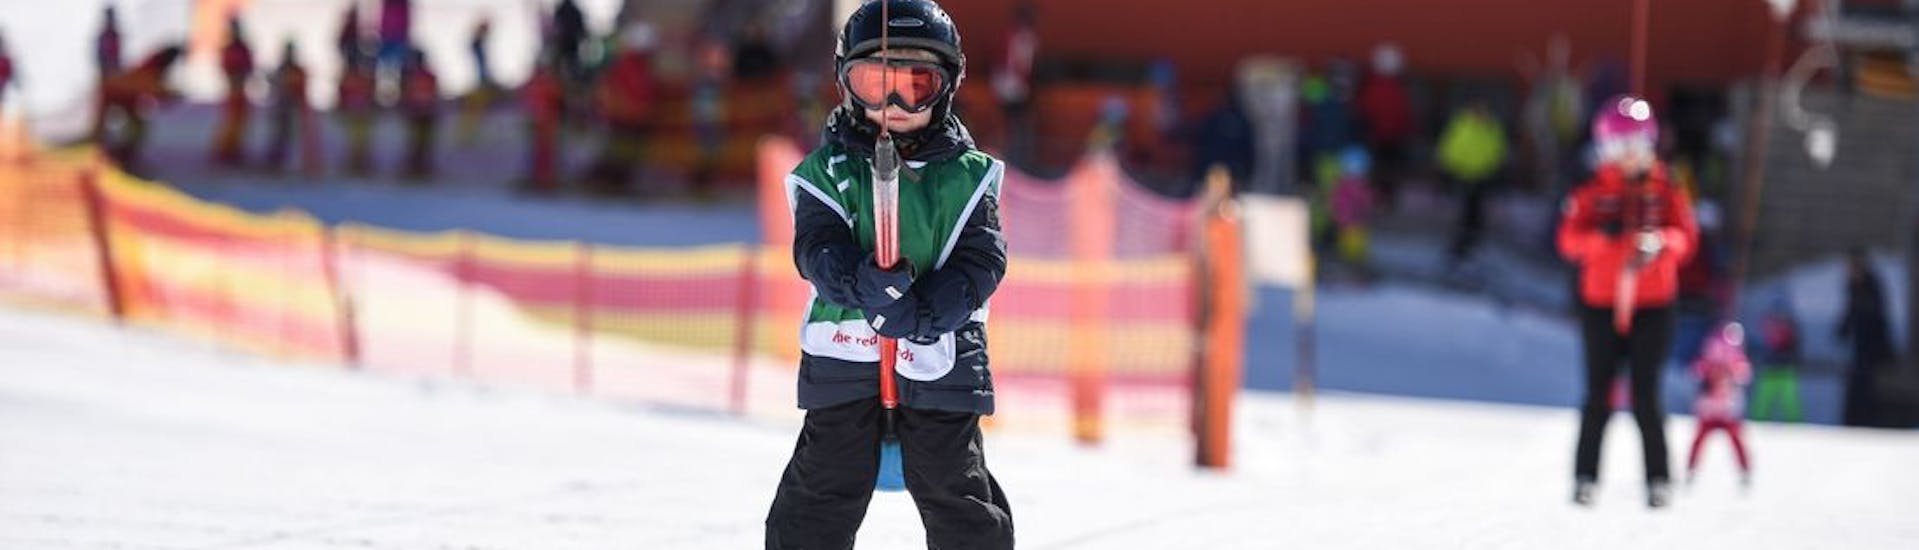 Ein kleiner Junge lernt im privaten Kinder-Skikurs der Schweizer Skischule St. Moritz the Red Legends, wie man einen Skilift bedient.